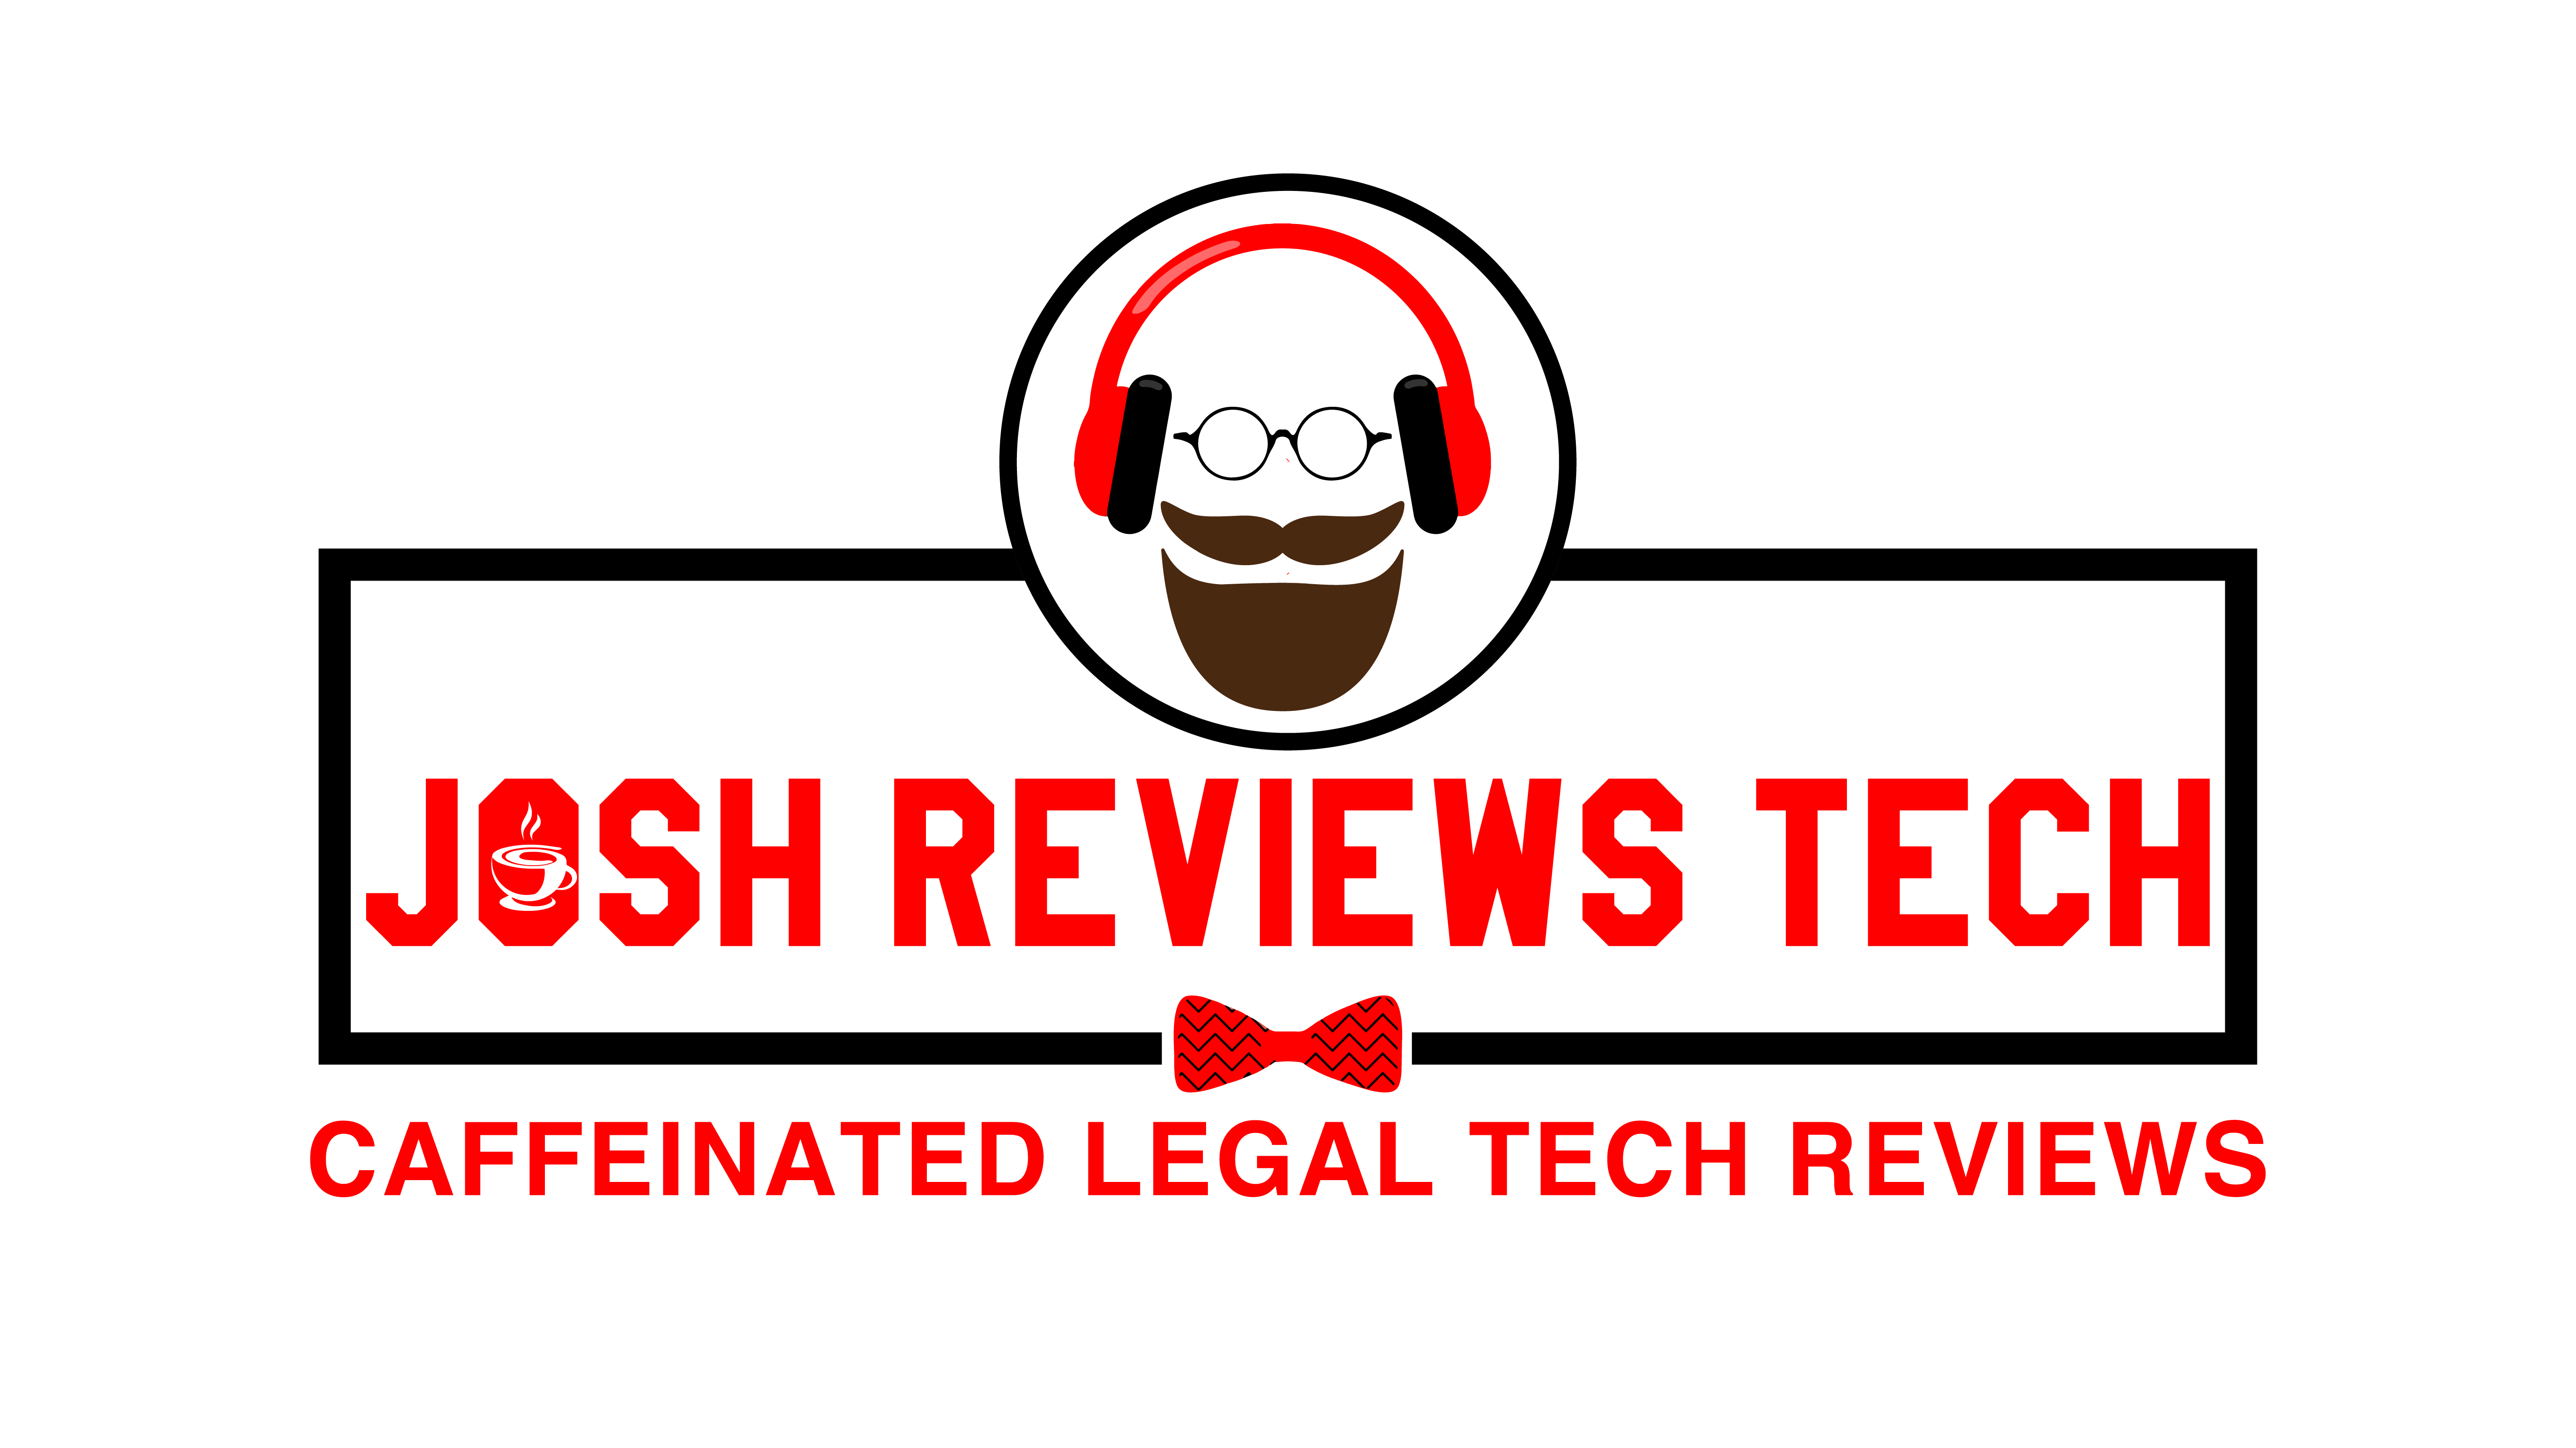 Josh Reviews Tech